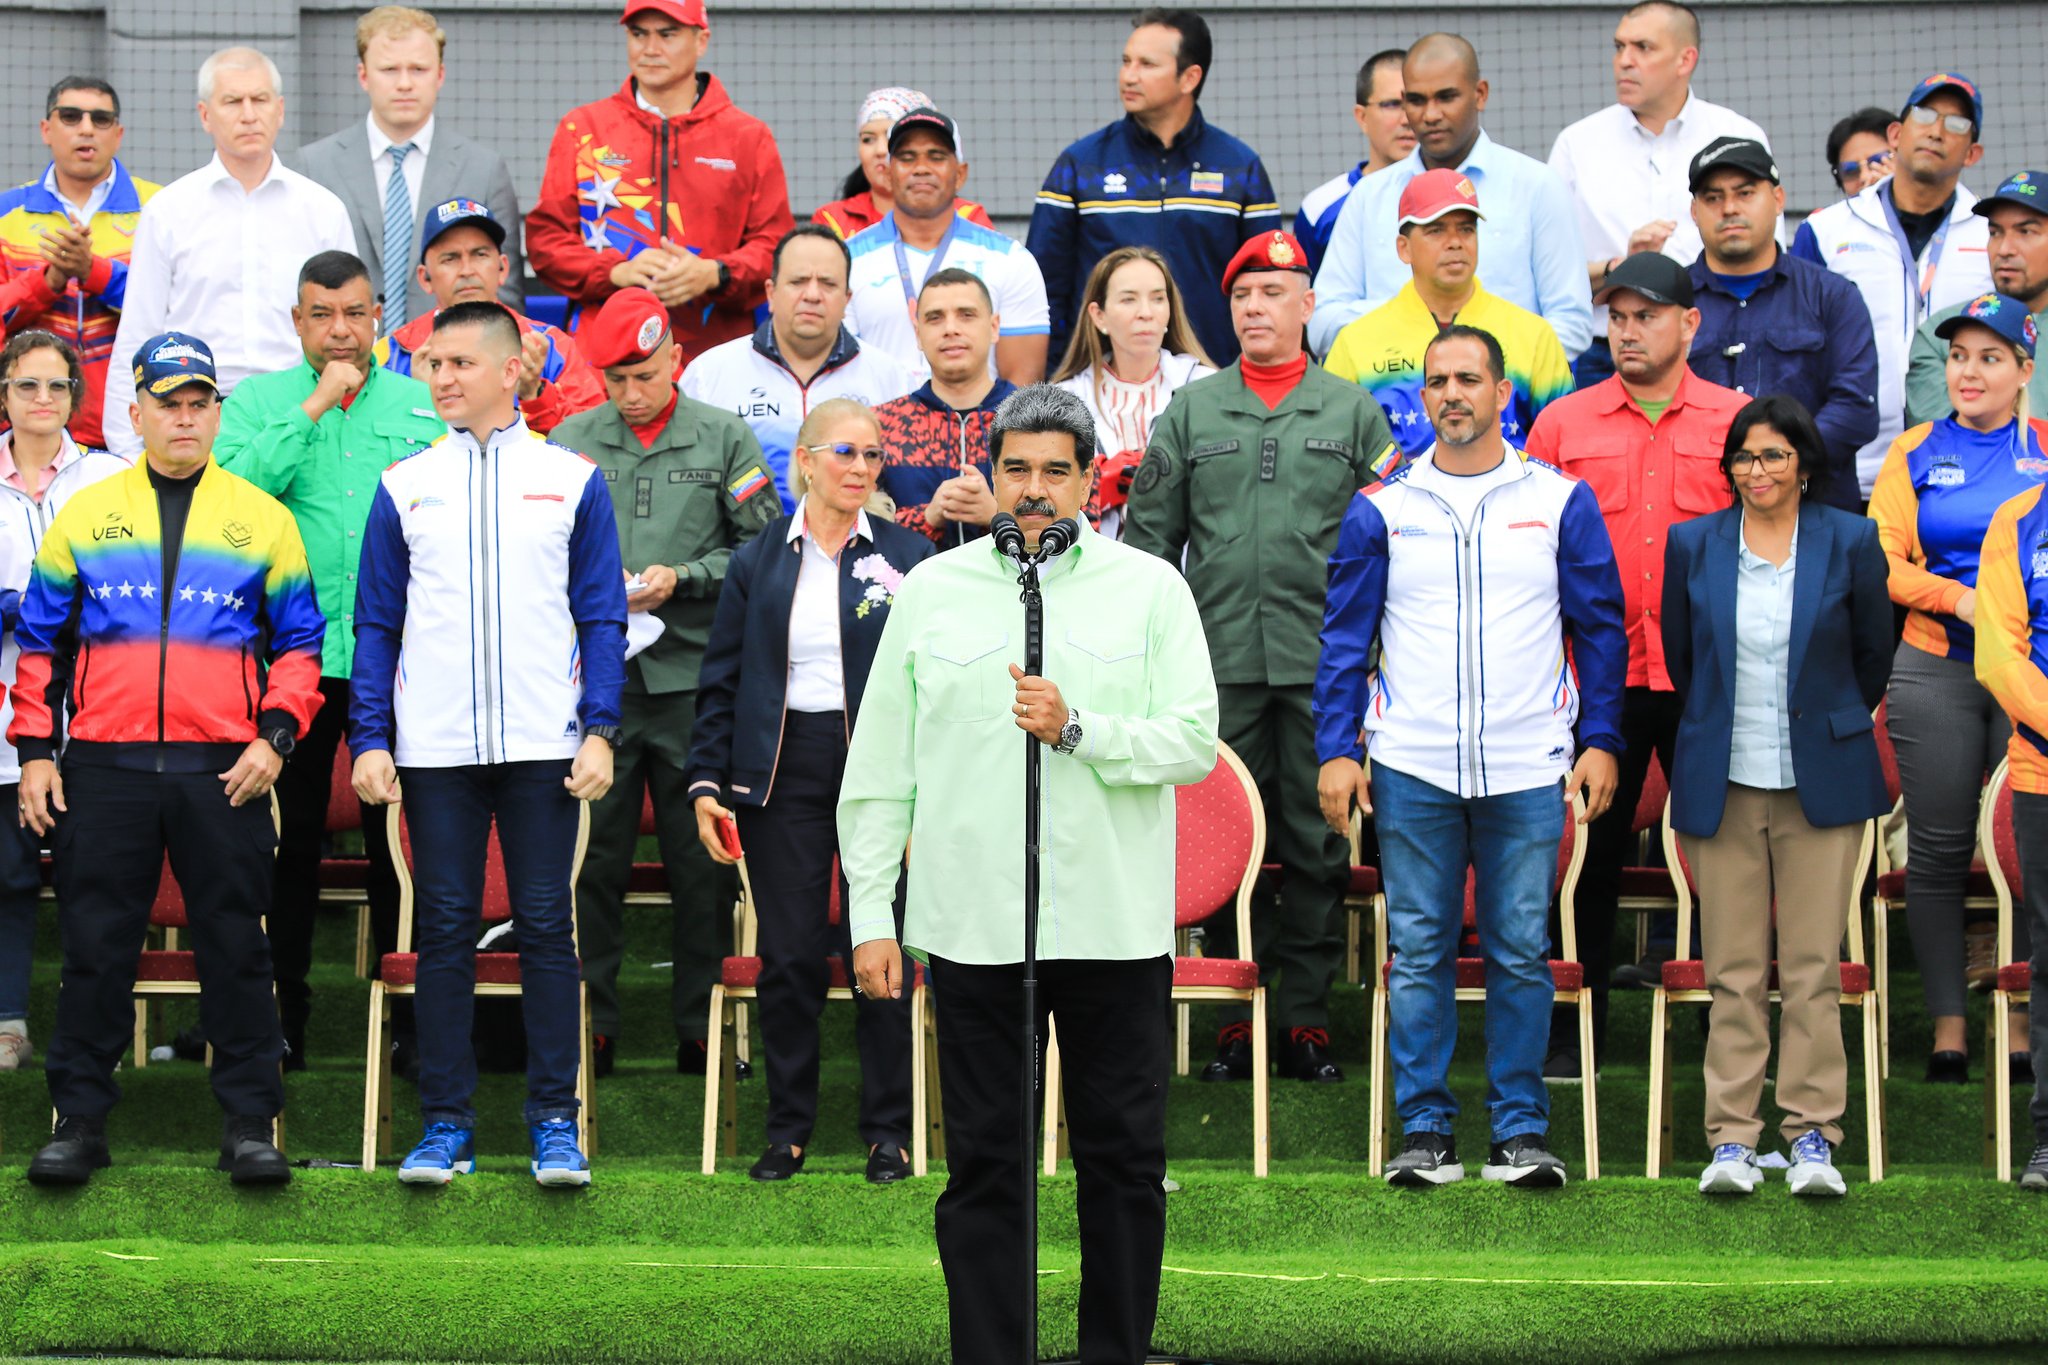 Presidente Maduro inaugura V Juegos Deportivos del ALBA